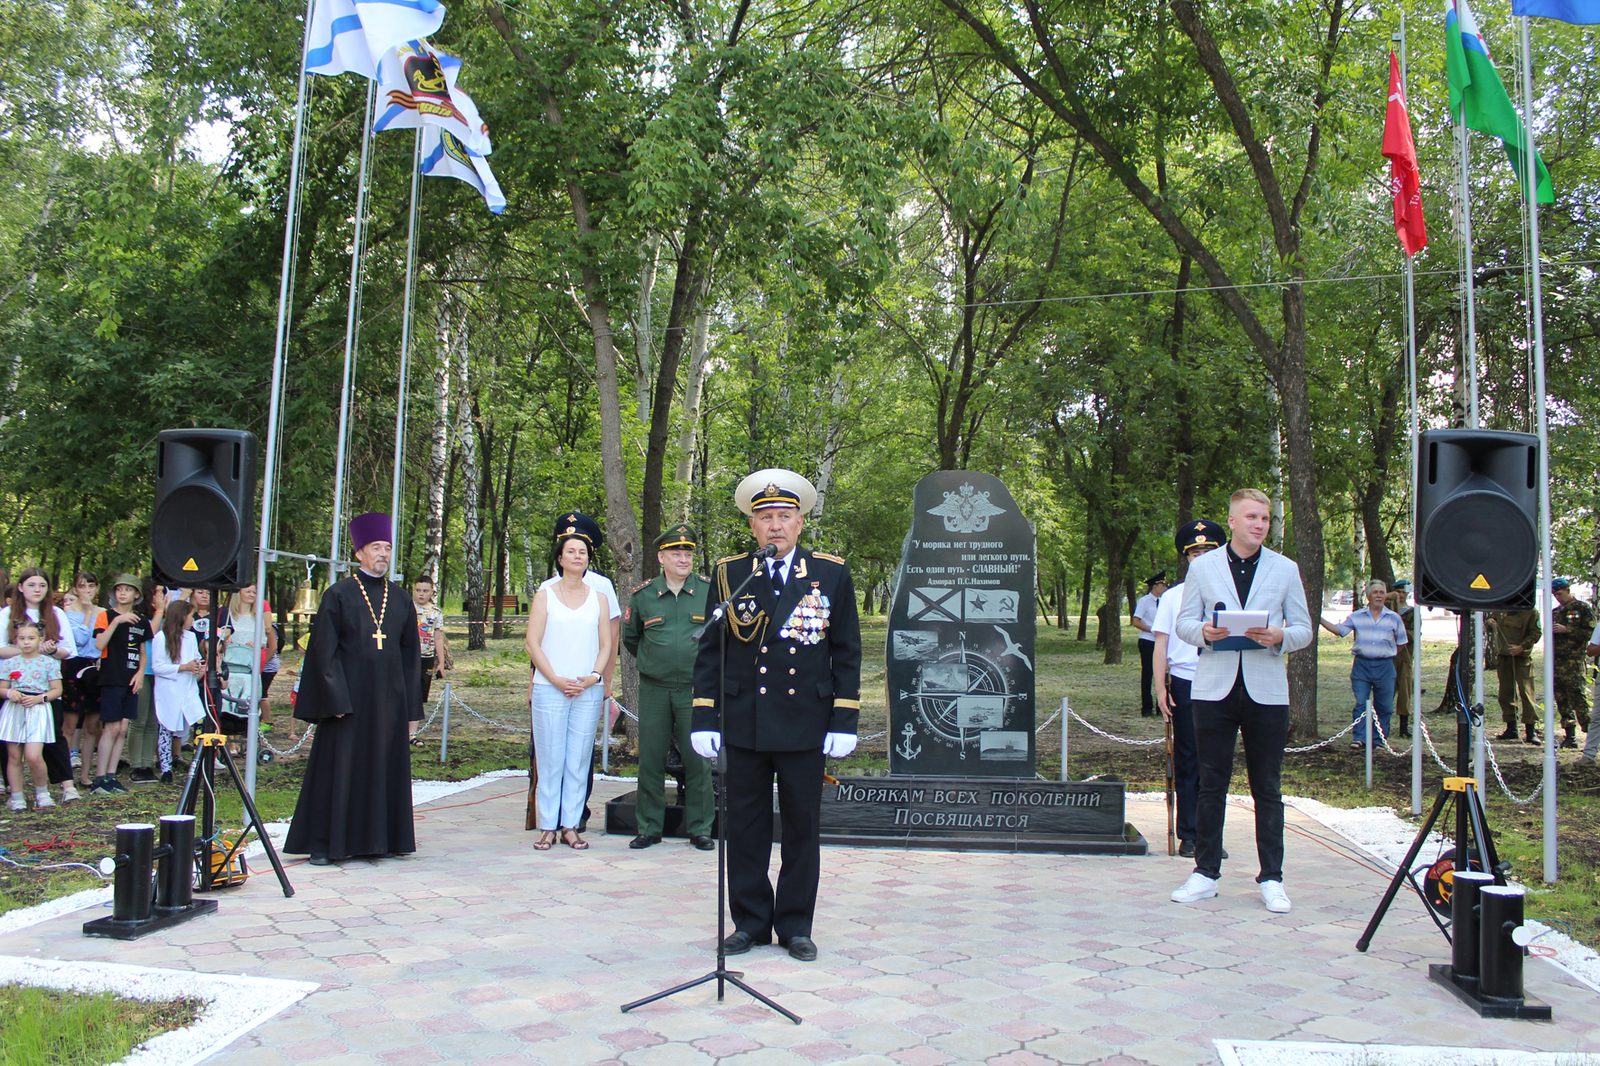 С поздравительными словами к собравшимся обратился почетный член Морского собрания Республики Башкортостан, ветеран подводного флота России, капитан первого ранга Рамиль Биктимиров.